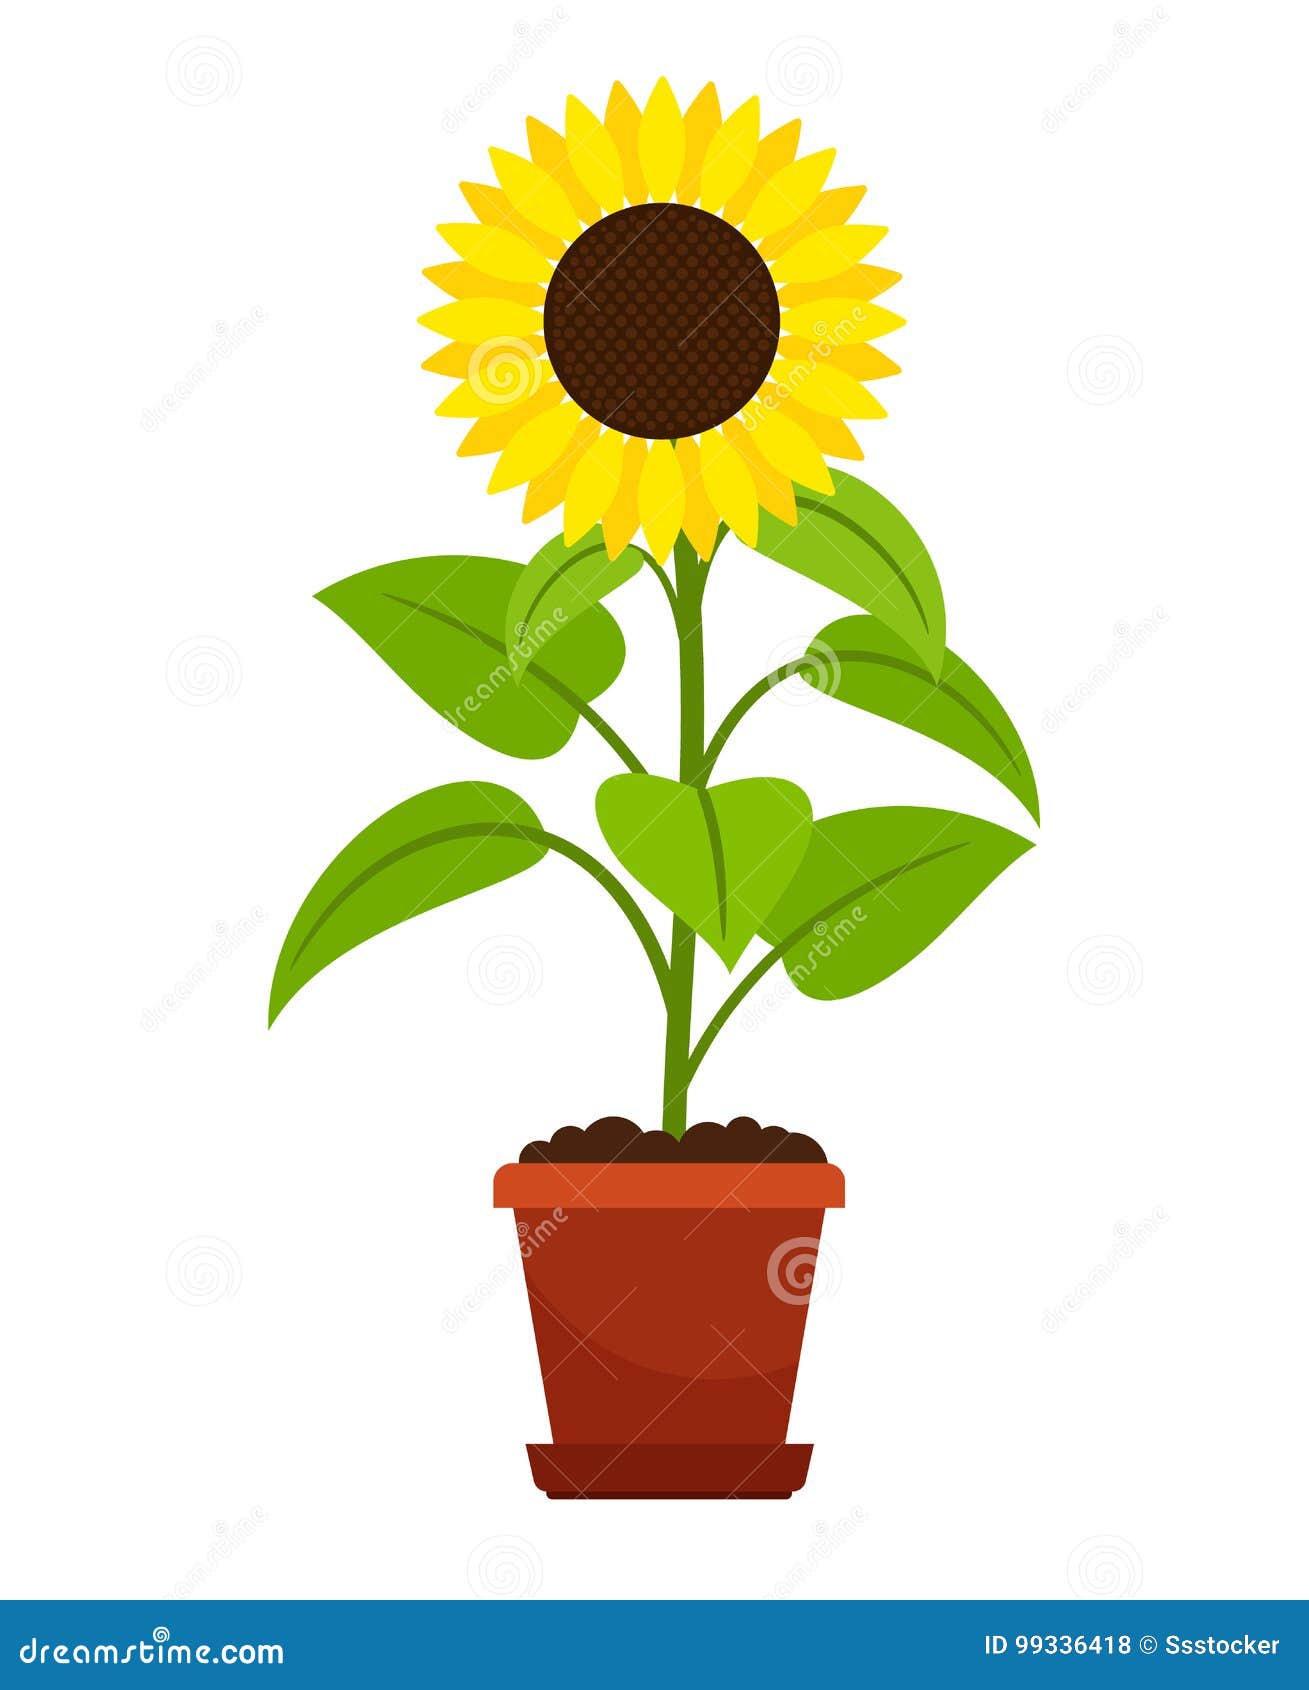 Download A Sunflower Plant In A Pot Cartoon Vector | CartoonDealer ...